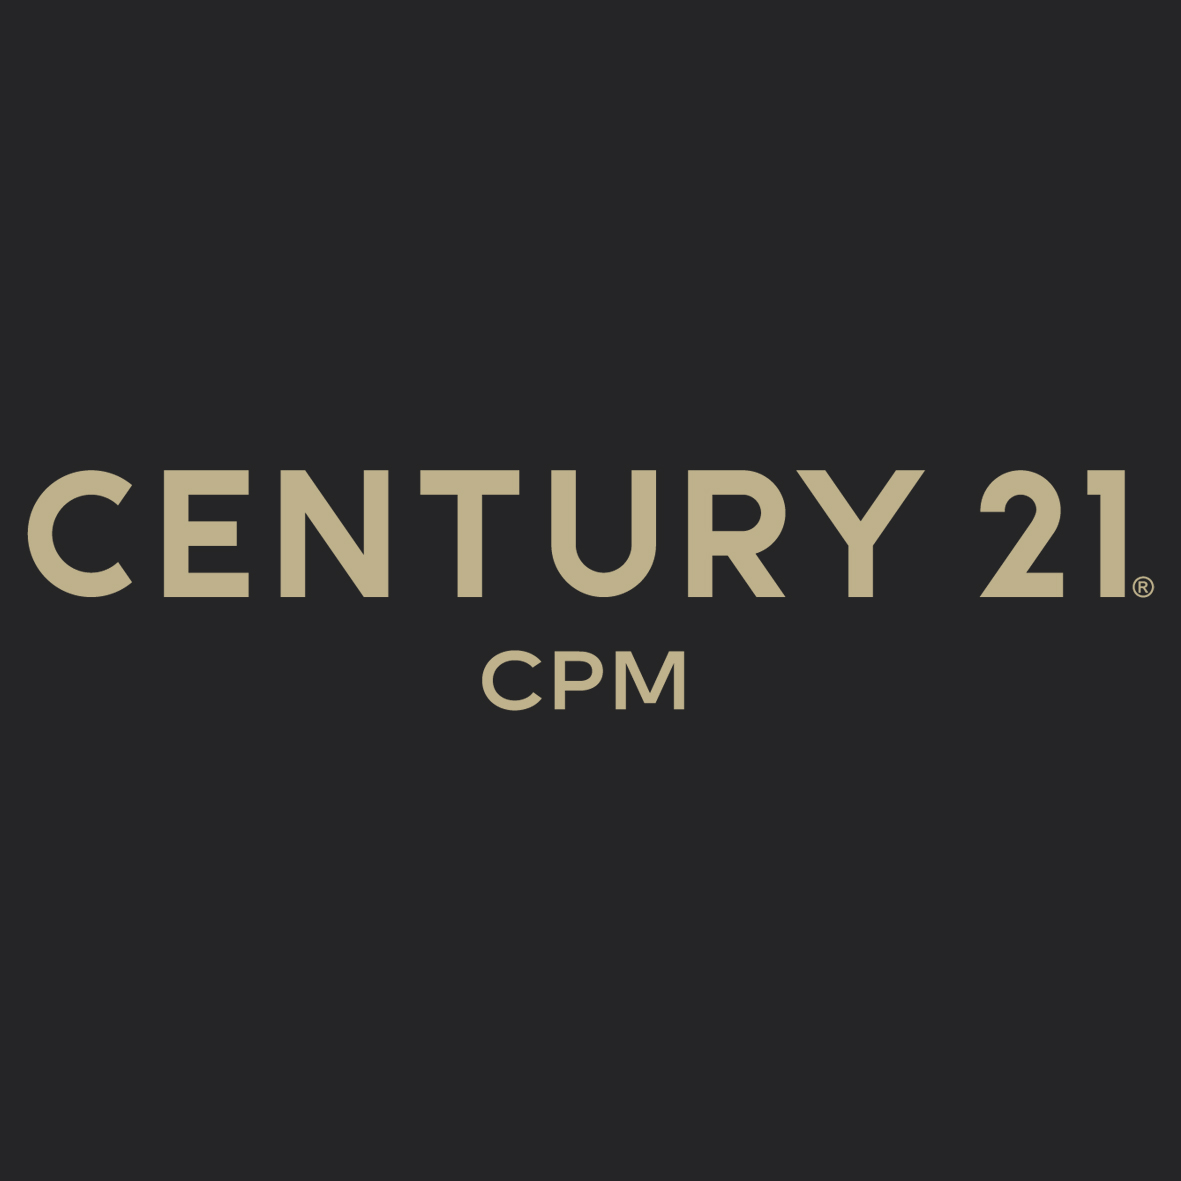 CENTURY 21 CPM